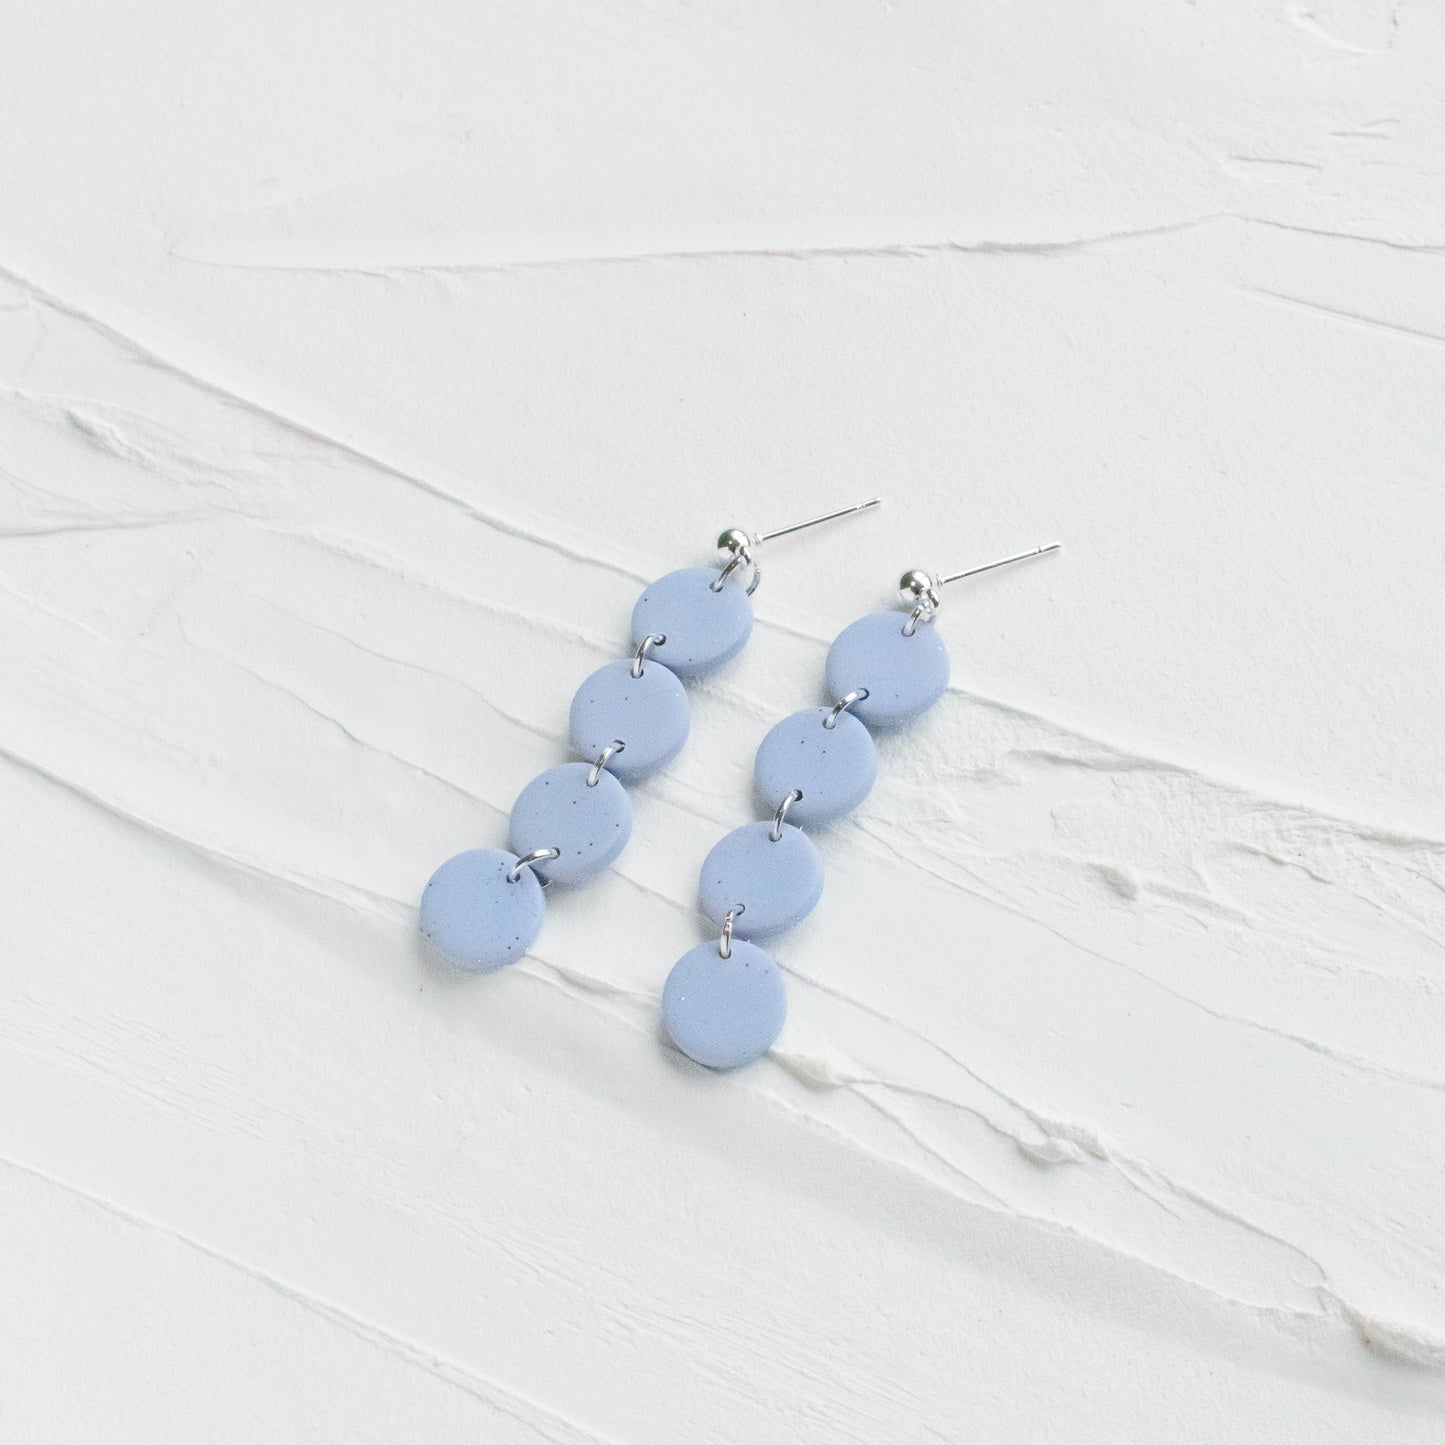 Mini Tiered Glittery Pale Blue Earrings - Claymore NZ - Earrings